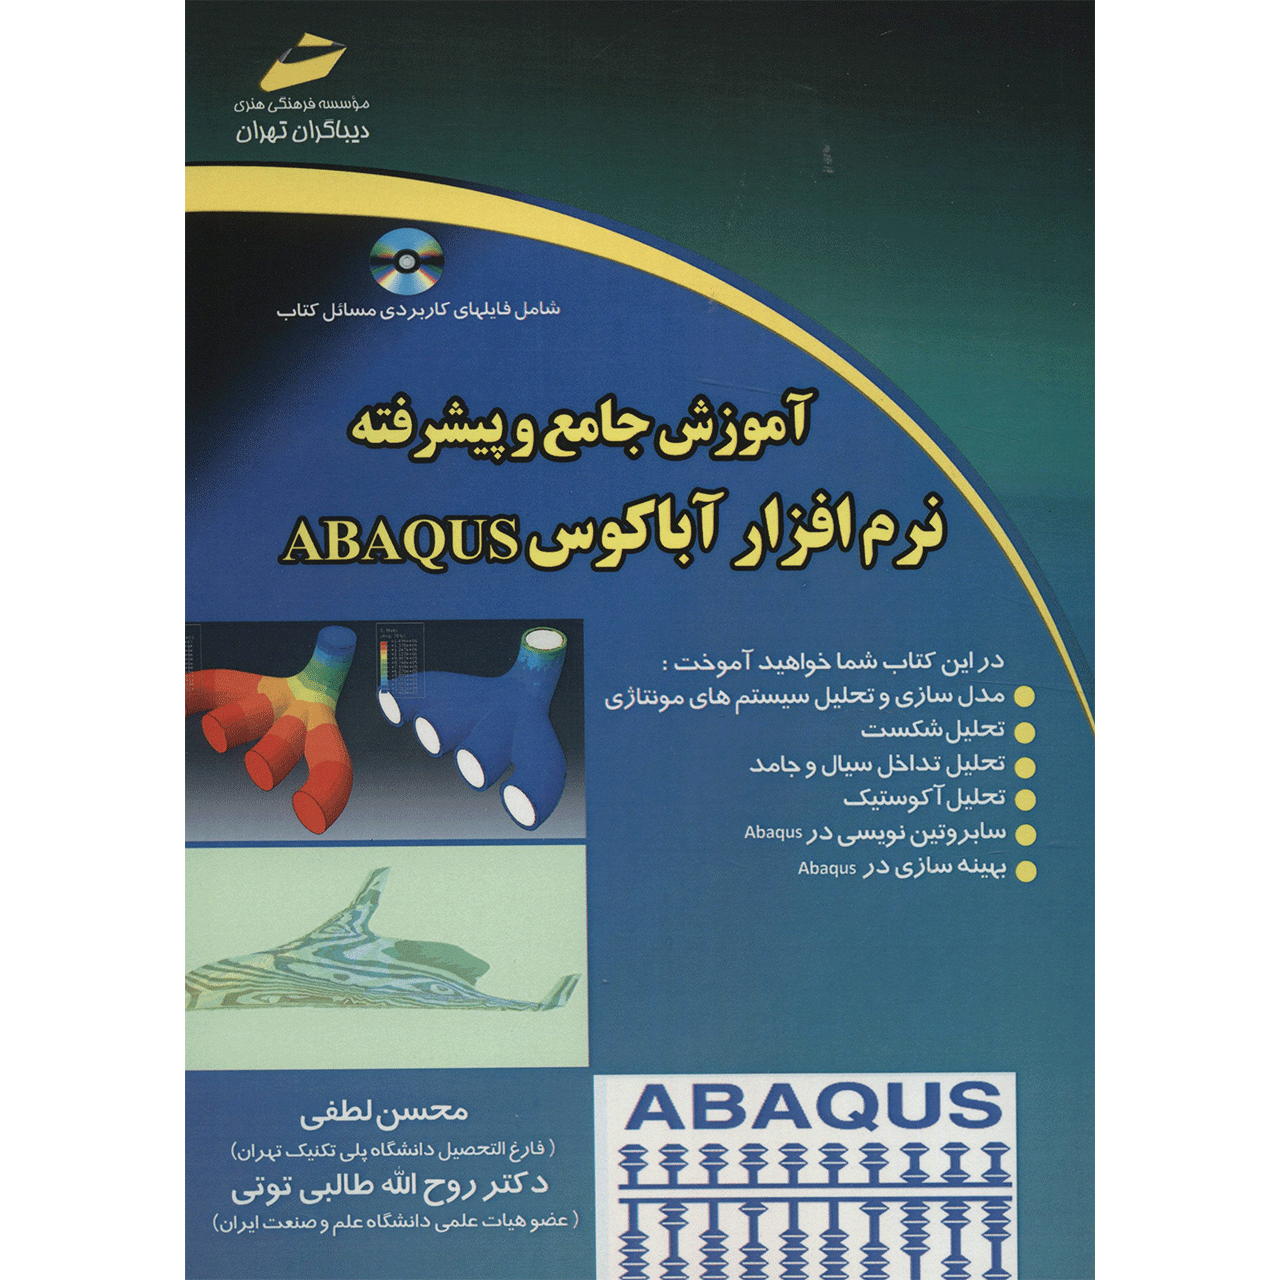 کتاب آموزش جامع و پیشرفته نرم افزار آباکوس ABAQUS اثر محسن لطفی